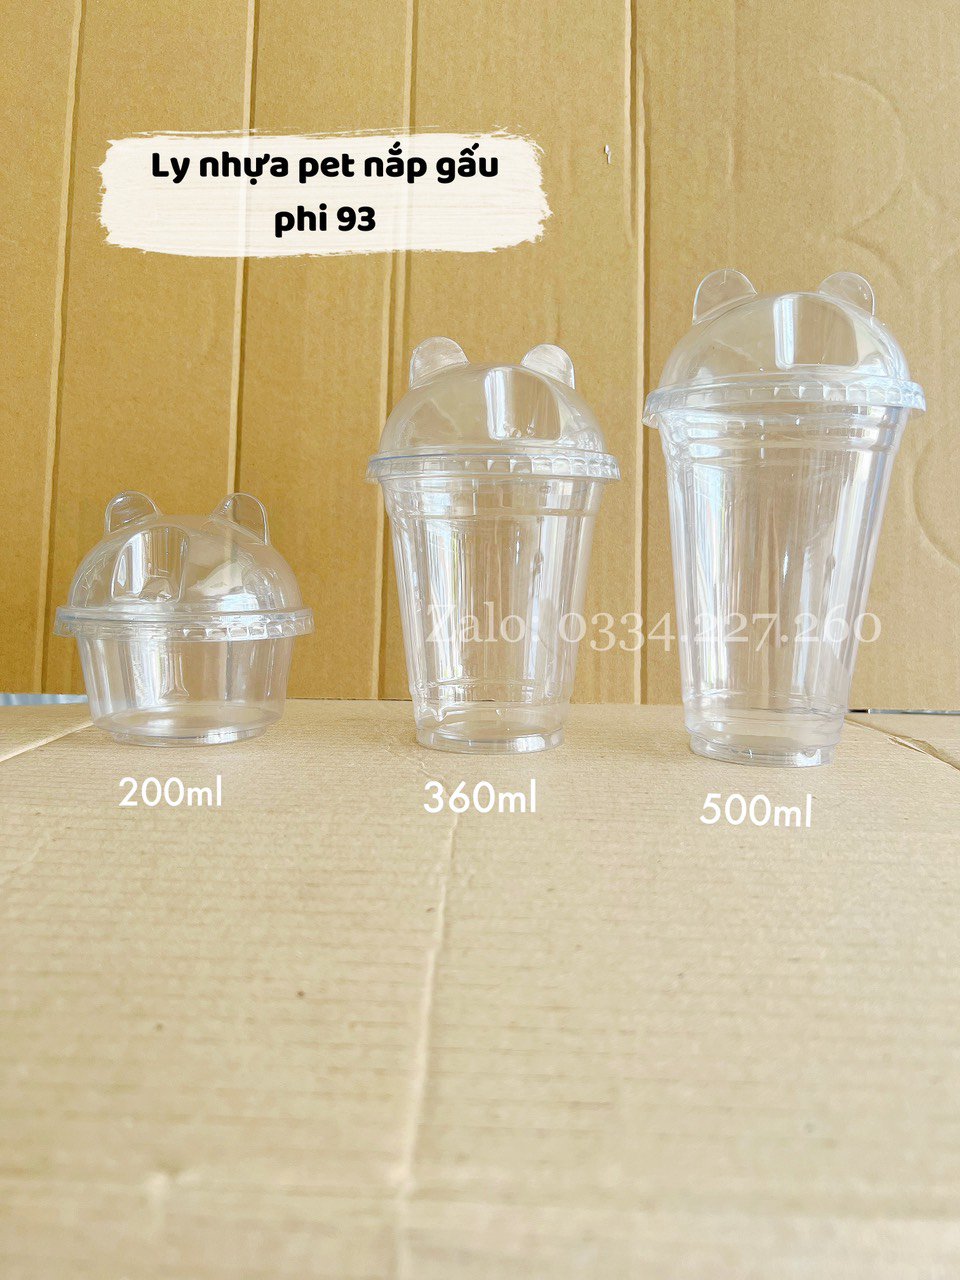 50 Ly(Cốc) Nhựa PET Nắp Gấu 200ml/360ml/500ml Gía rẻ